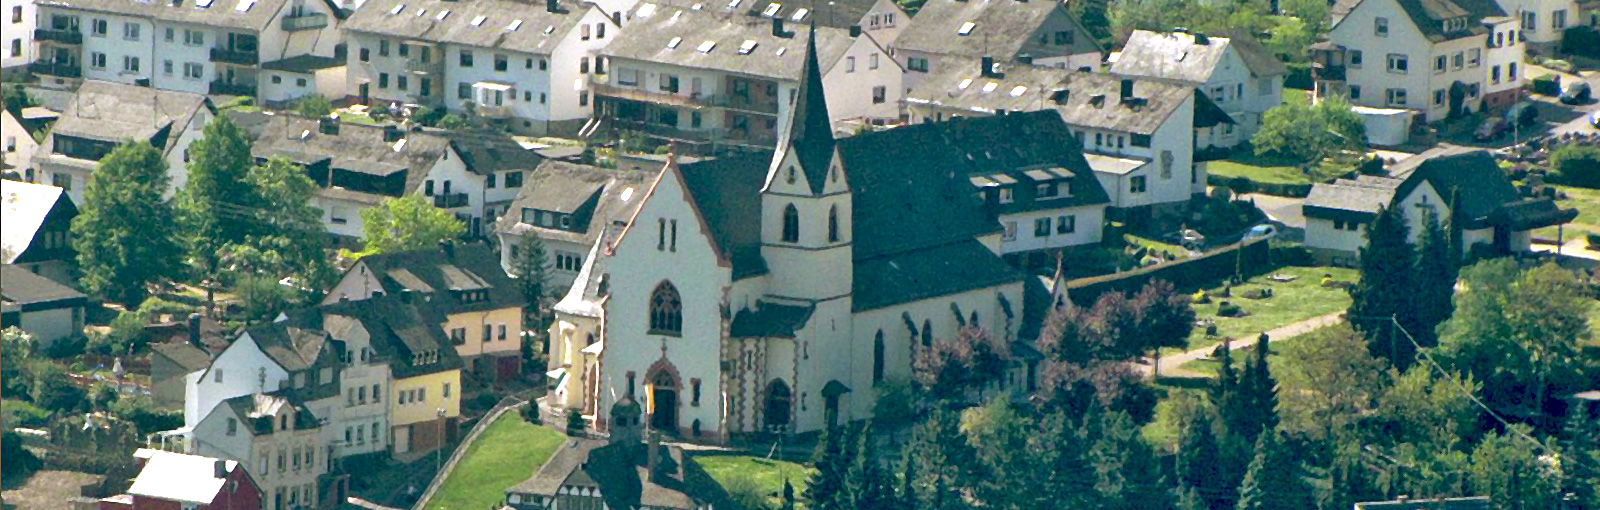 Luftbild Ahrweiler